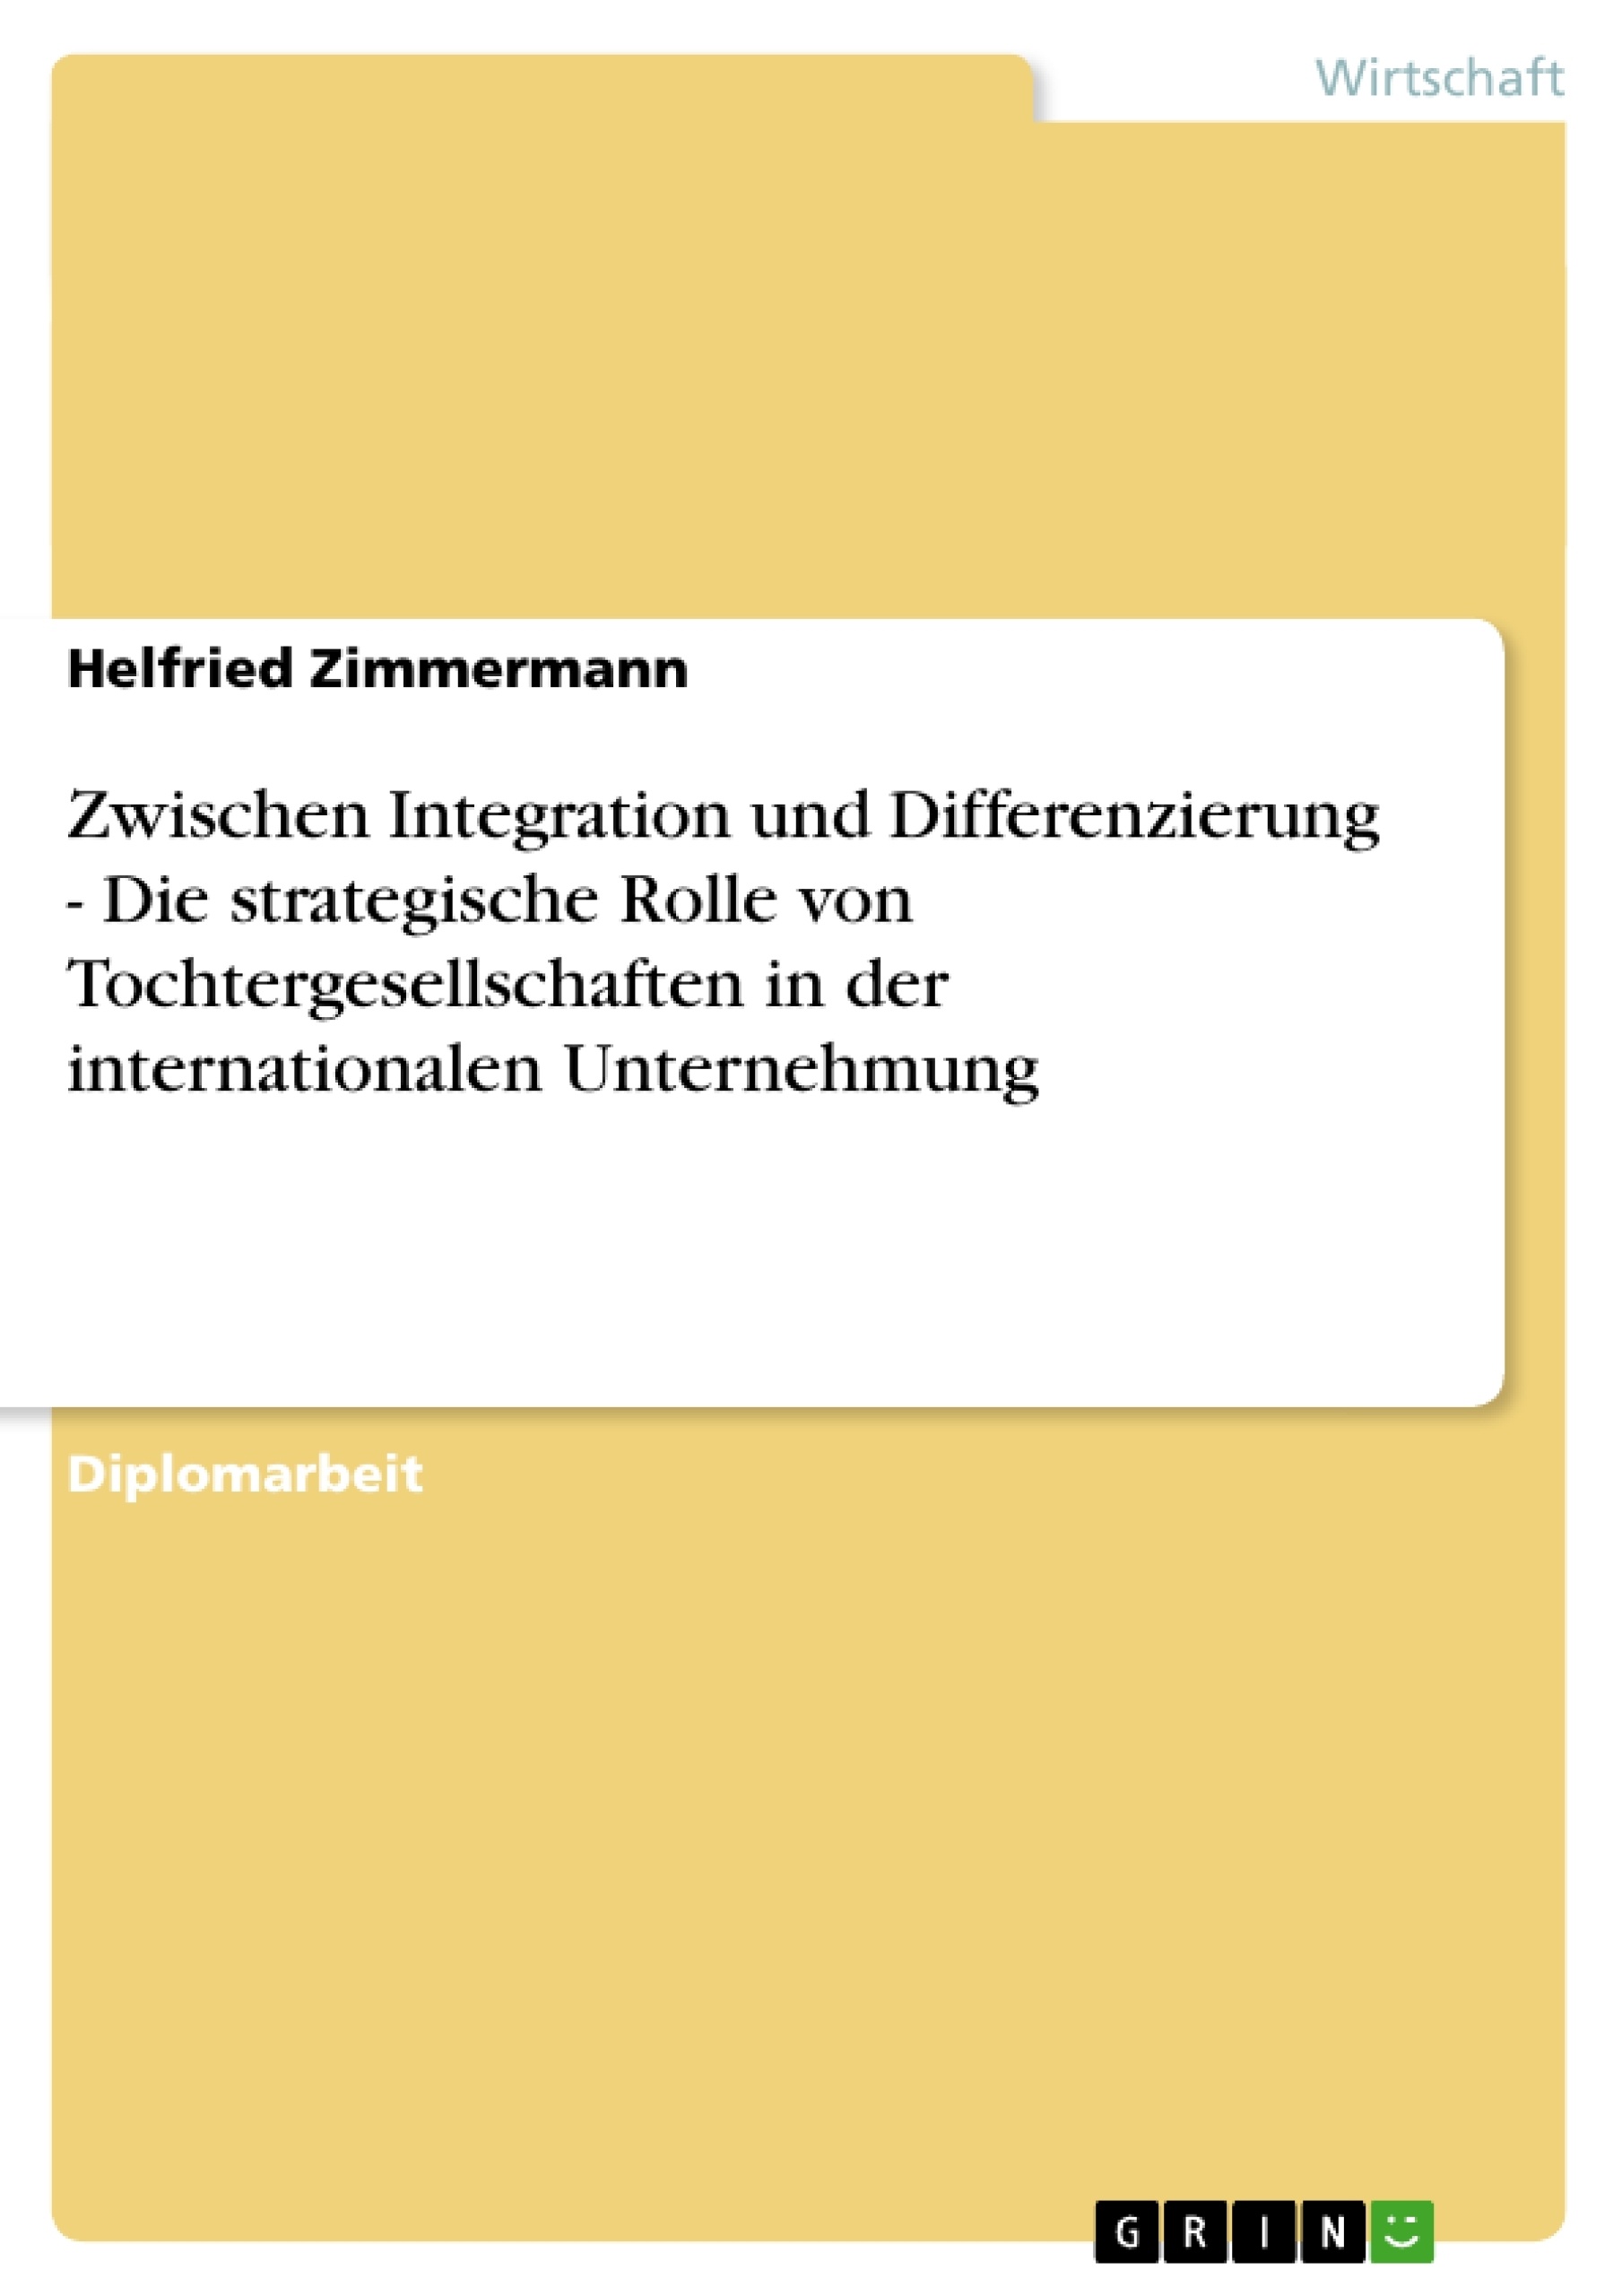 Titre: Zwischen Integration und Differenzierung - Die strategische Rolle von Tochtergesellschaften in der internationalen Unternehmung